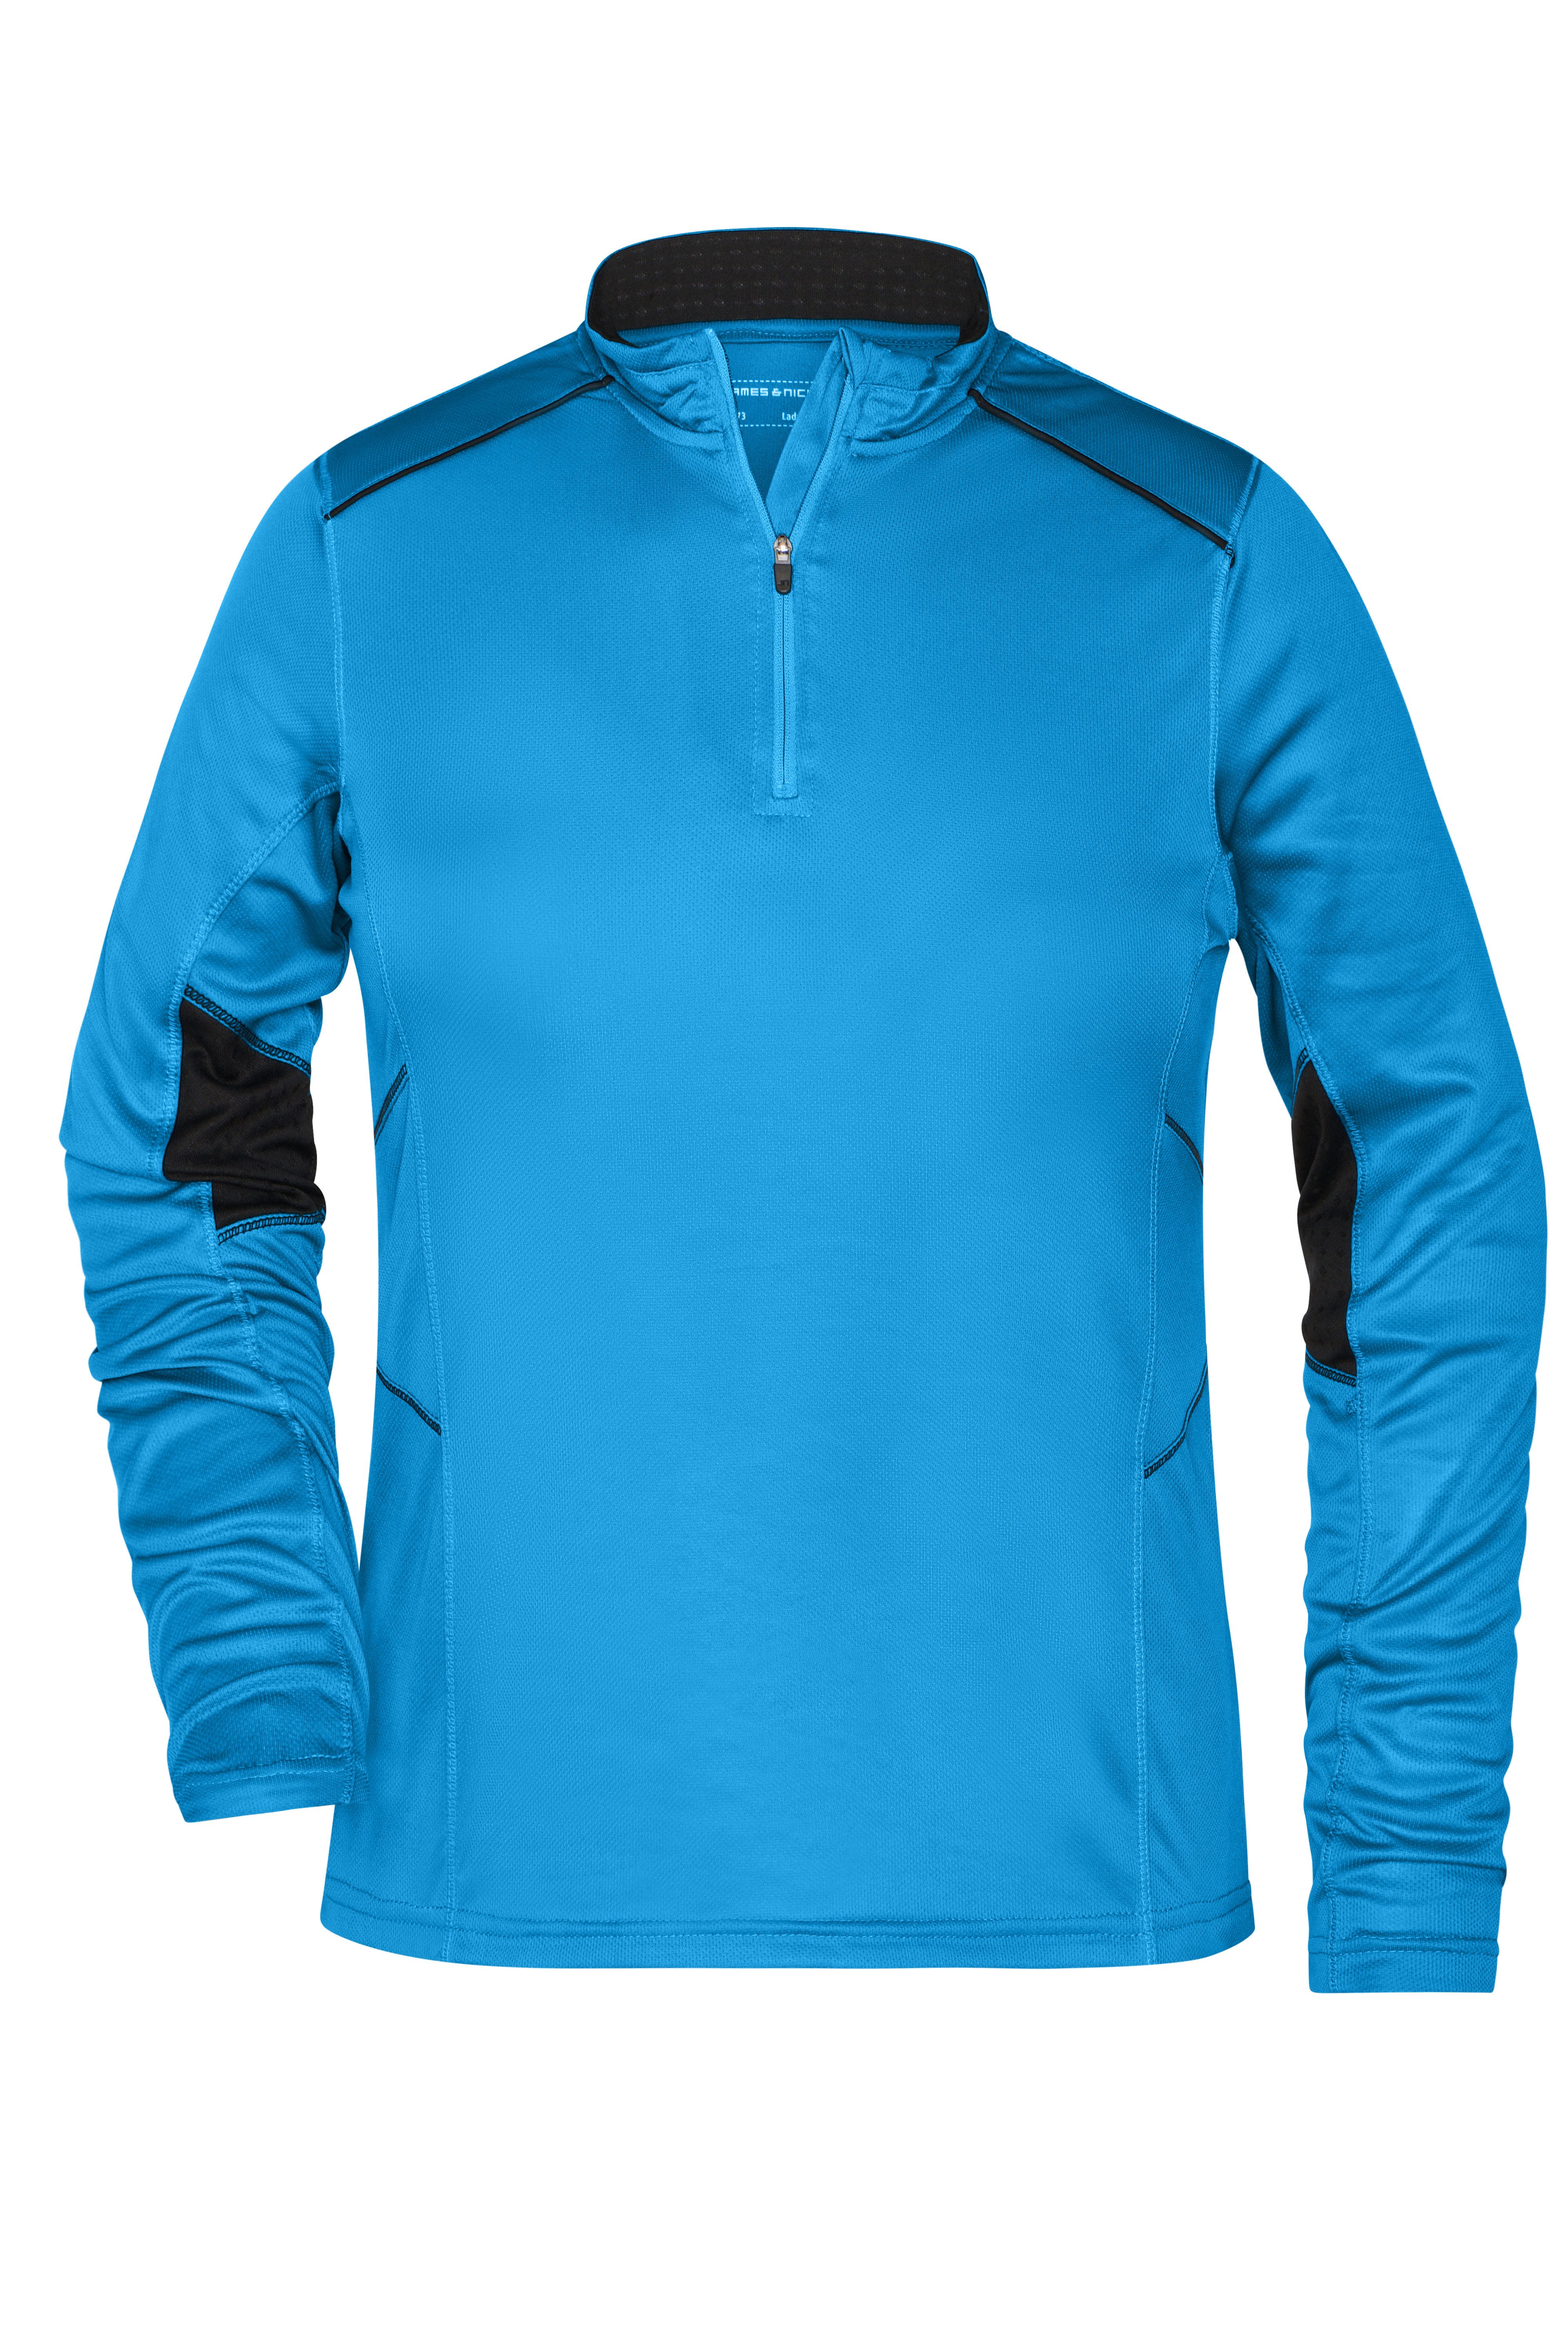 James & Nicholson Laufshirt Atmungsaktives Damen Laufshirt in vielen Farben JN473 Feuchtigkeitsregulierend, schnell trocknend, leicht und komfortabel